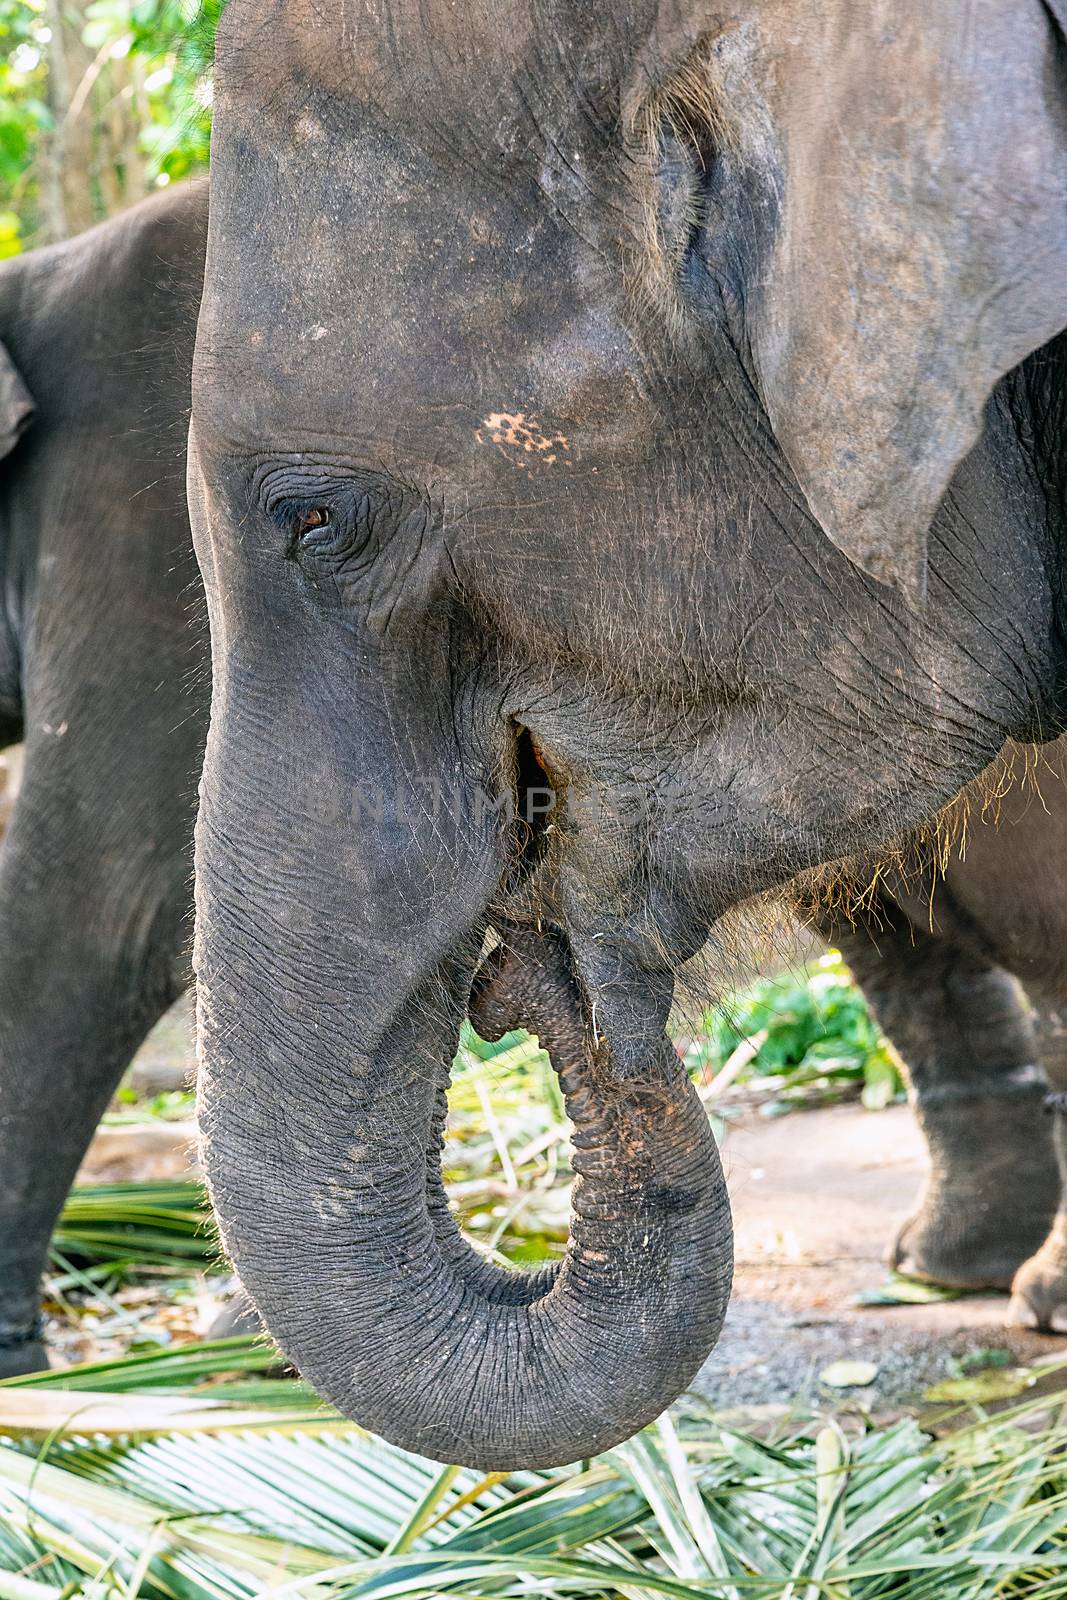 Elephants farm animals, Sri Lanka